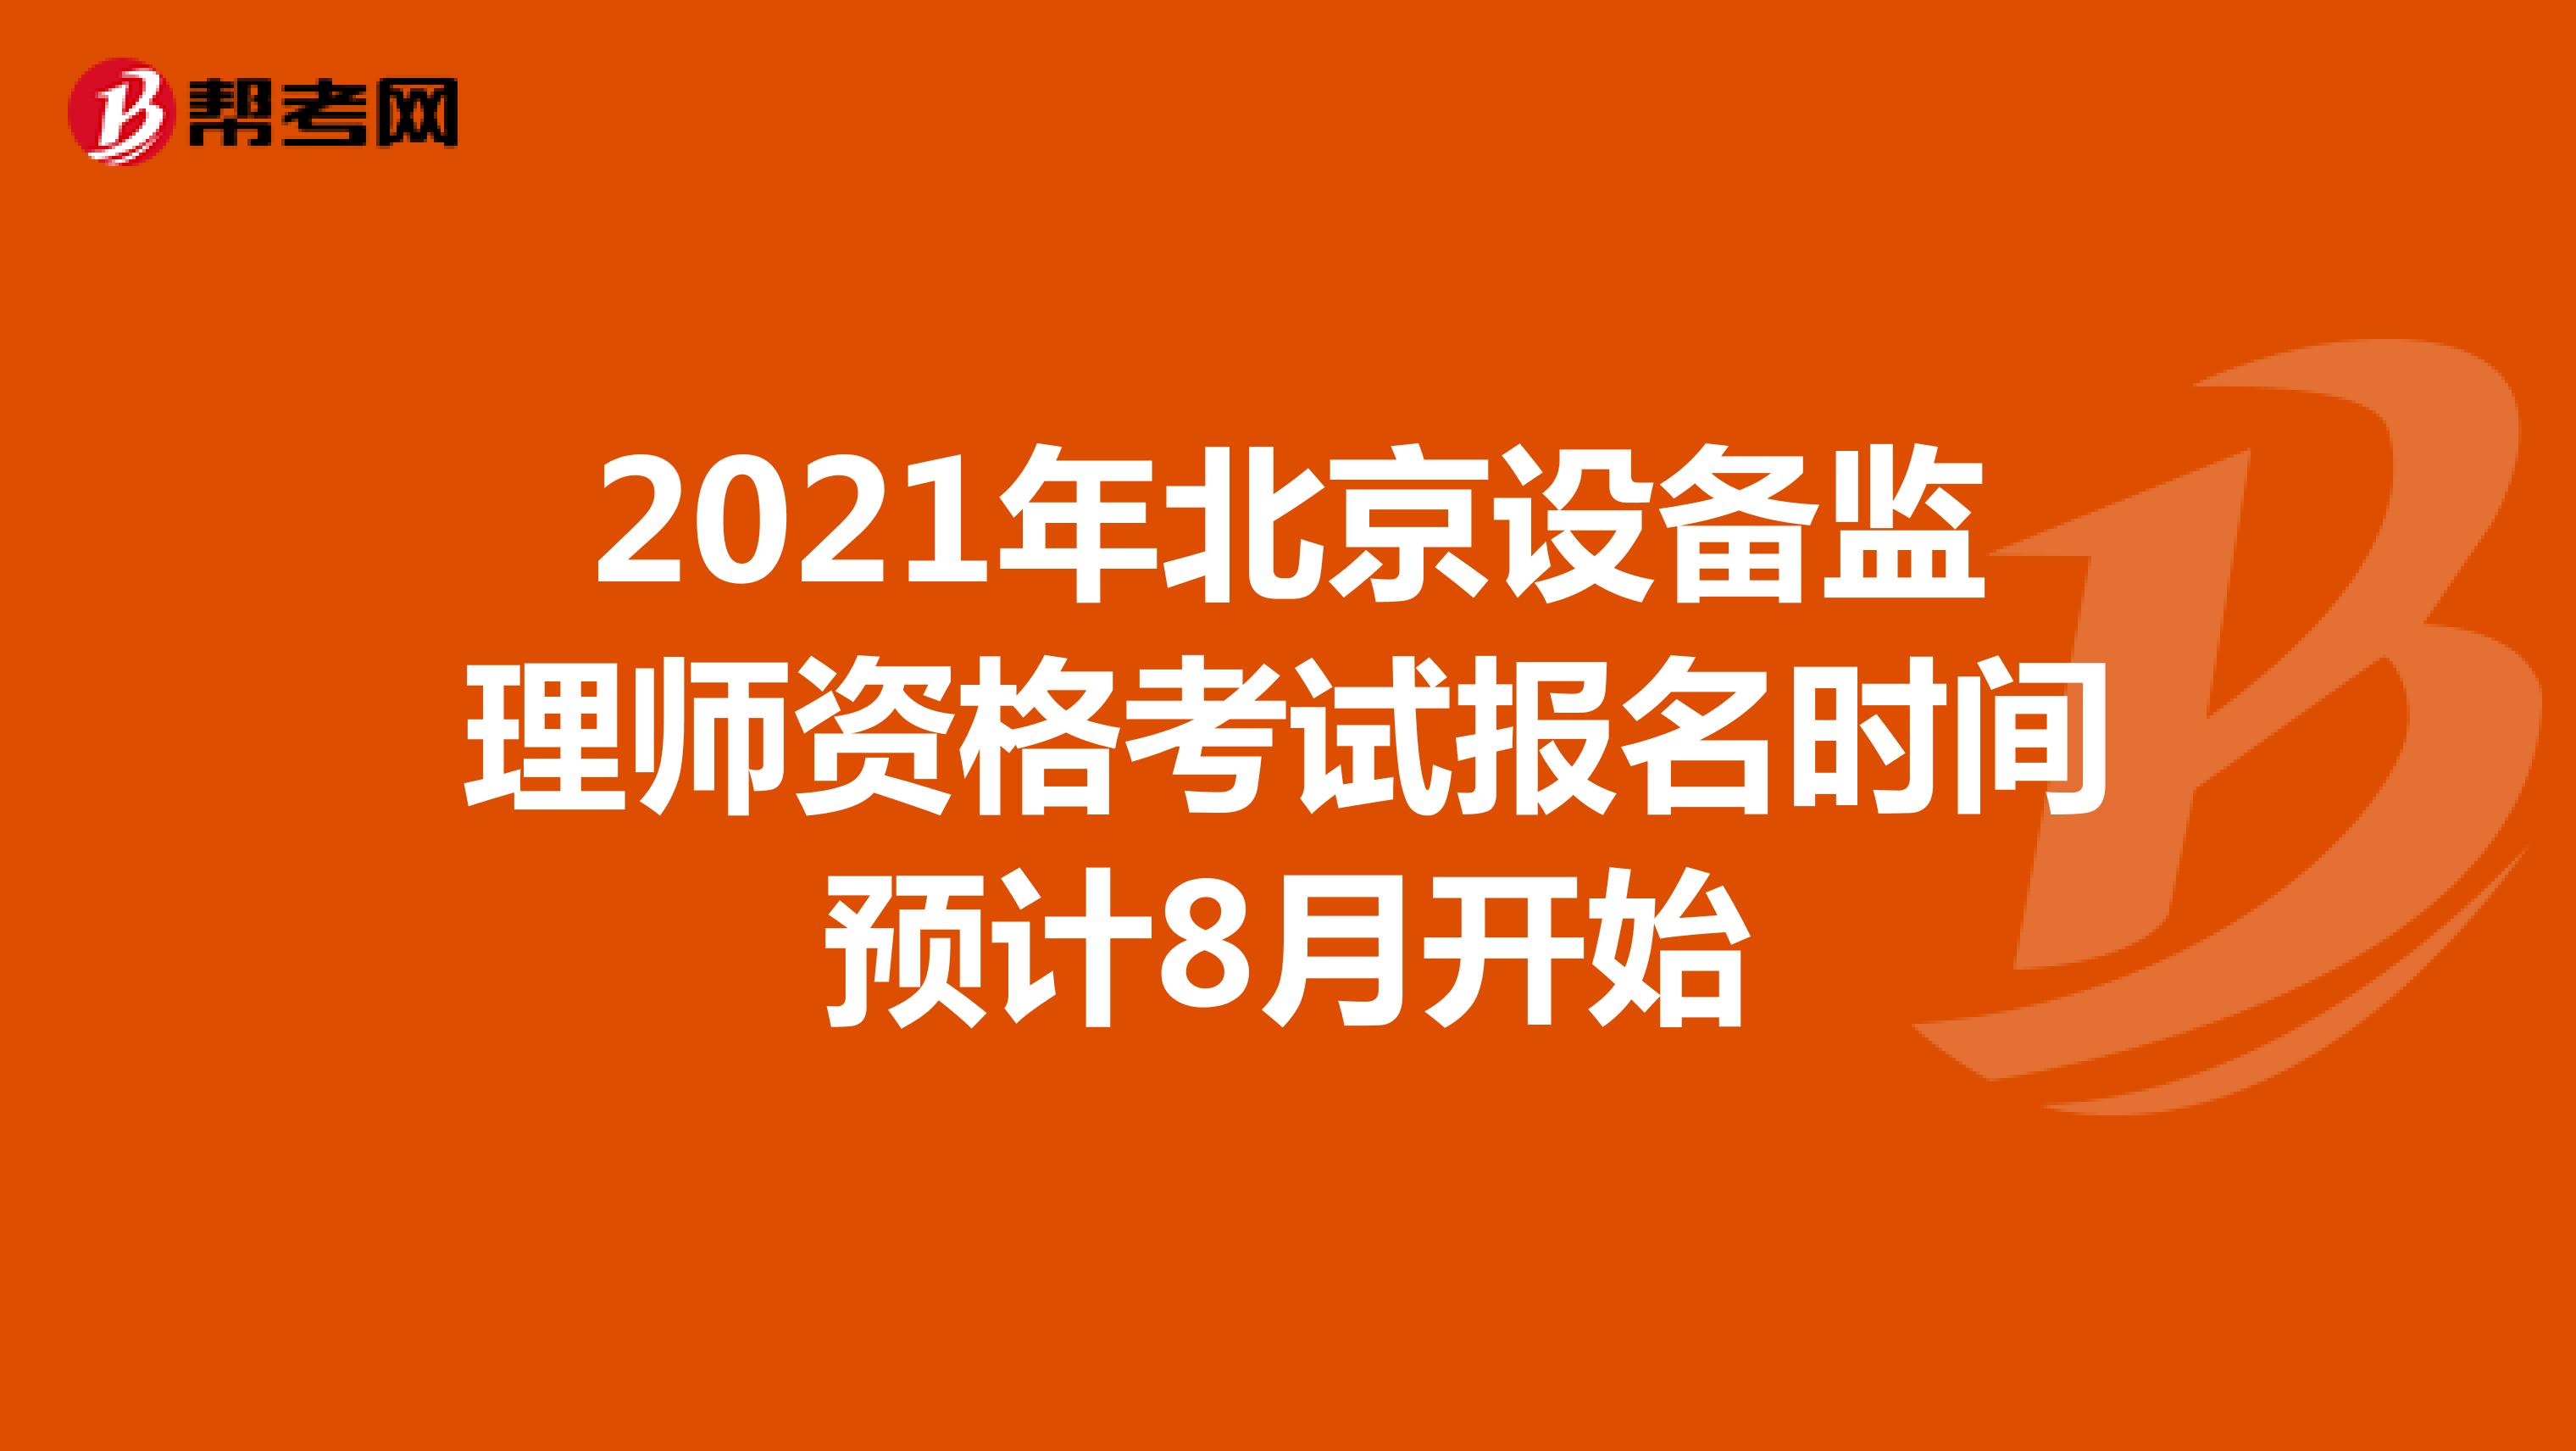 2021年北京设备监理师资格考试报名时间预计8月开始